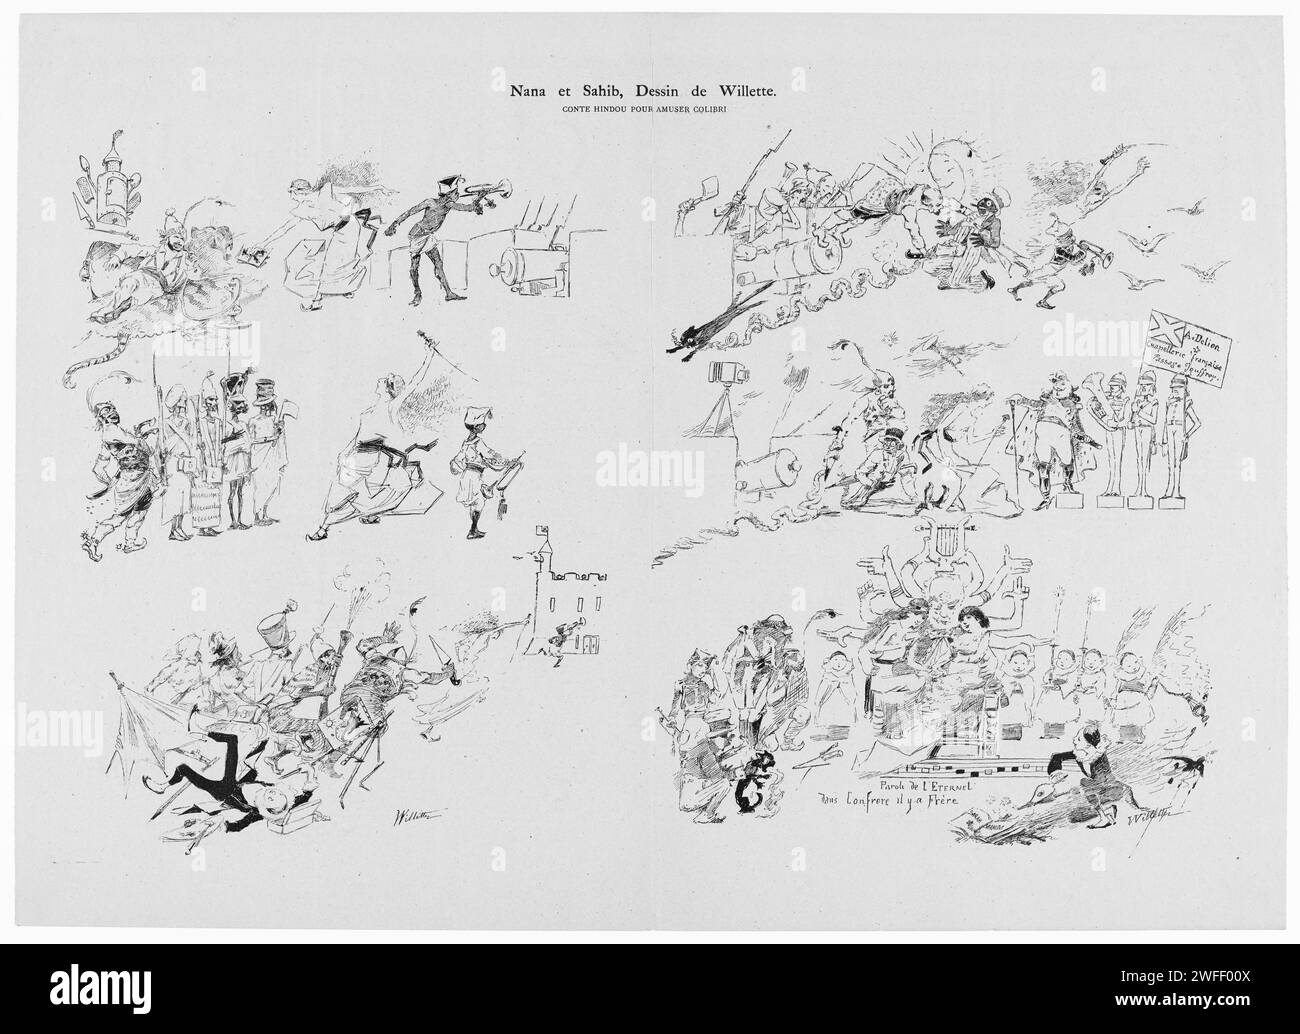 Illustration für die Zeitschrift Le Chat noir vom 5. Januar 1884. Victor Hugo wird als Hindu-Göttin Kali unten rechts im Bild dargestellt. Andere Bilder beziehen sich auf die Rebellion in Indien, angeführt von Nana Sahib. Stockfoto